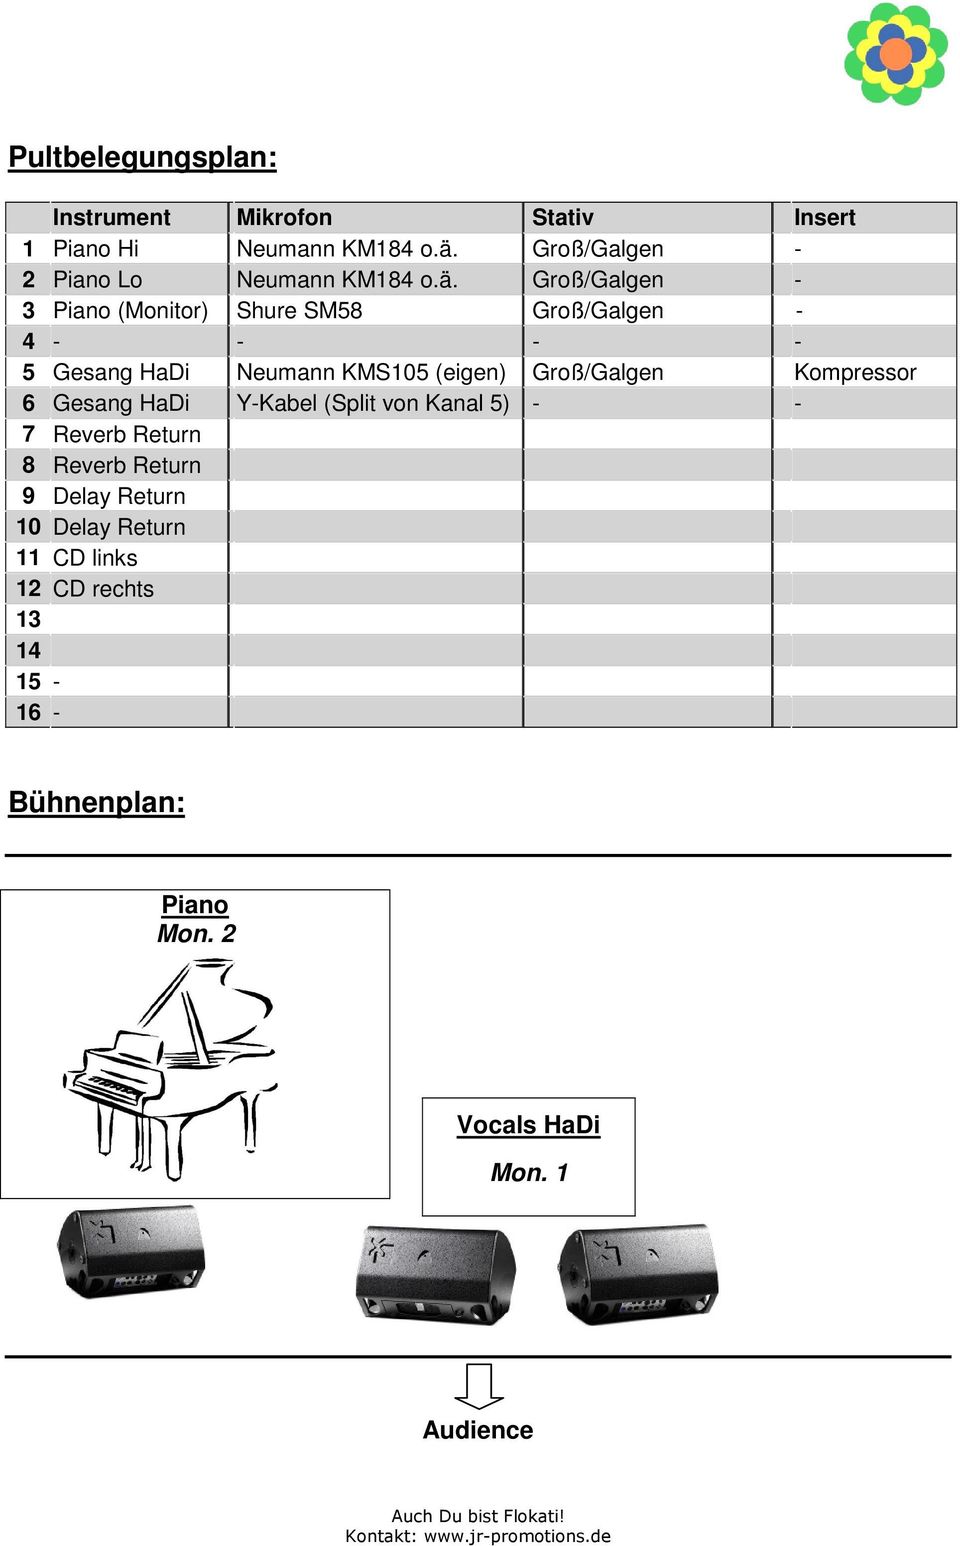 Groß/Galgen - 3 Piano (Monitor) Shure SM58 Groß/Galgen - 4 - - - - 5 Gesang HaDi Neumann KMS105 (eigen)